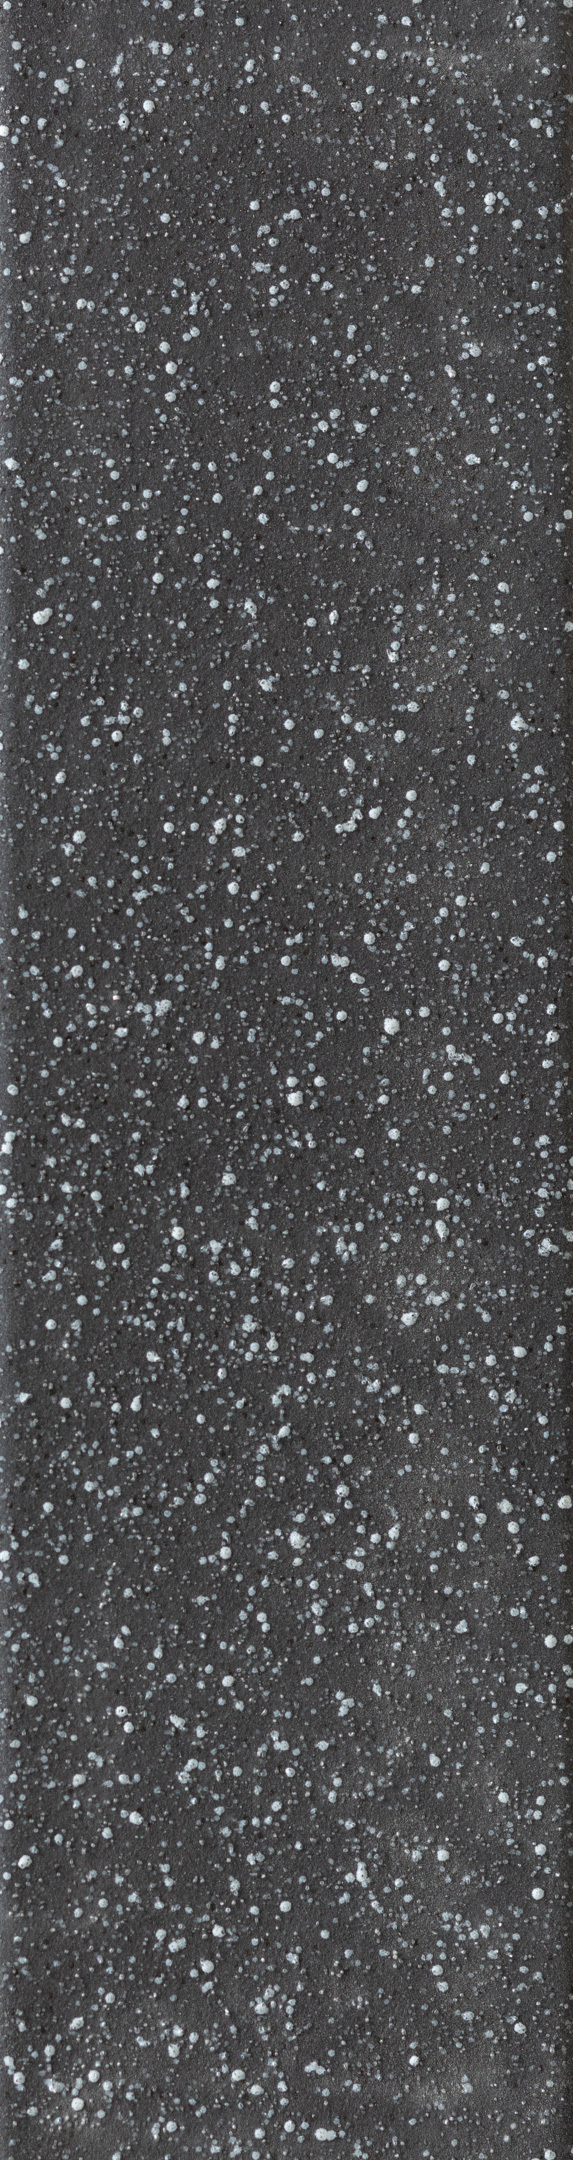 Клинкерная плитка Керамин Мичиган 2 черная 245х65х7 мм (34 шт.=0,54 кв.м) клинкерная плитка мичиган 2 черный 24 5х6 5 керамин